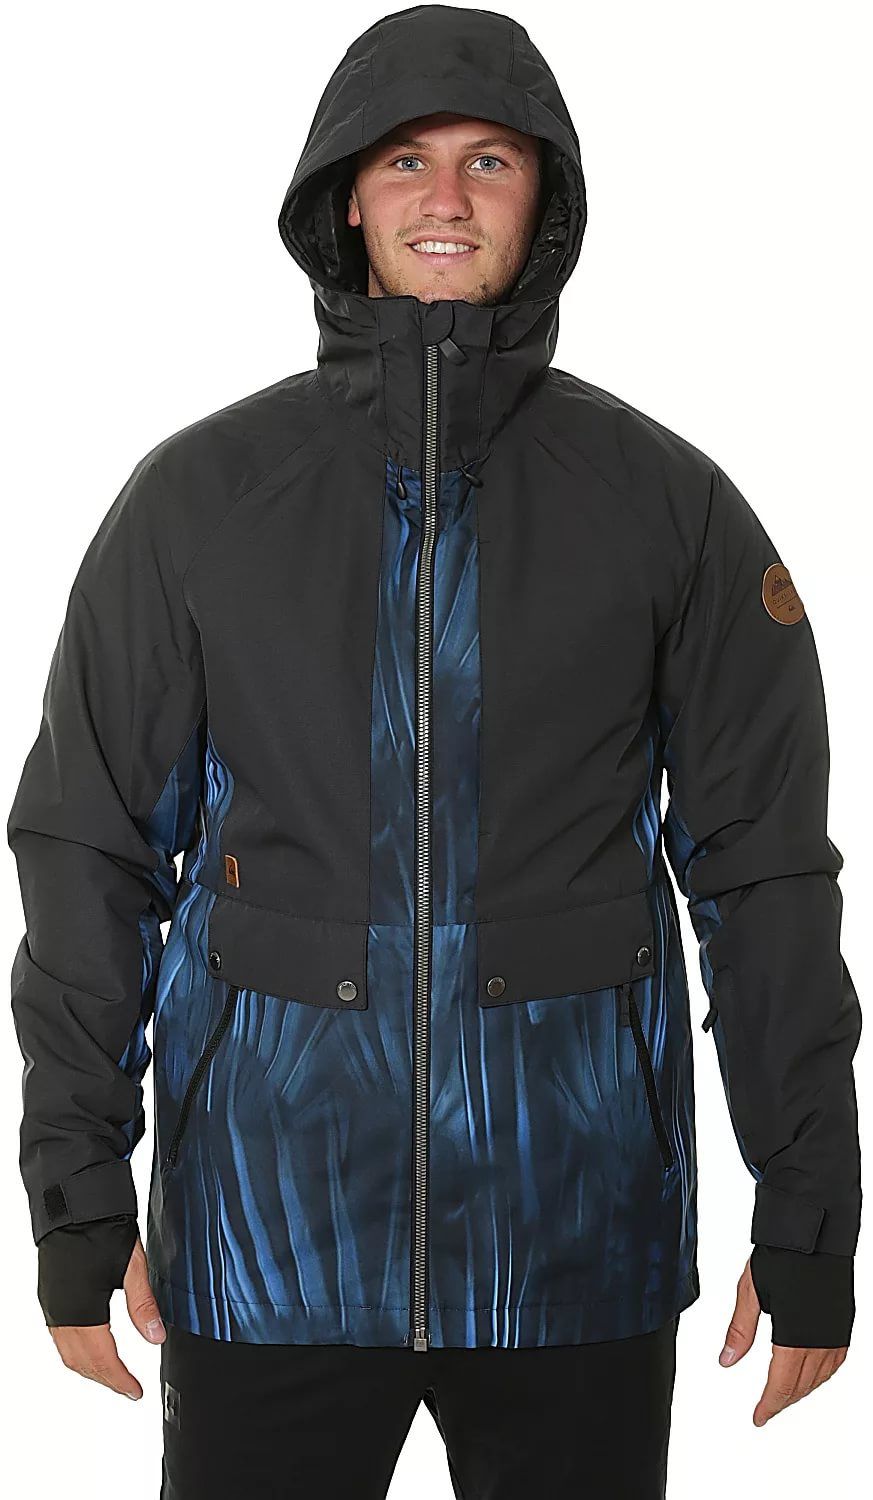 Quiksilver - Сноубордическая мужская куртка TR Ambition